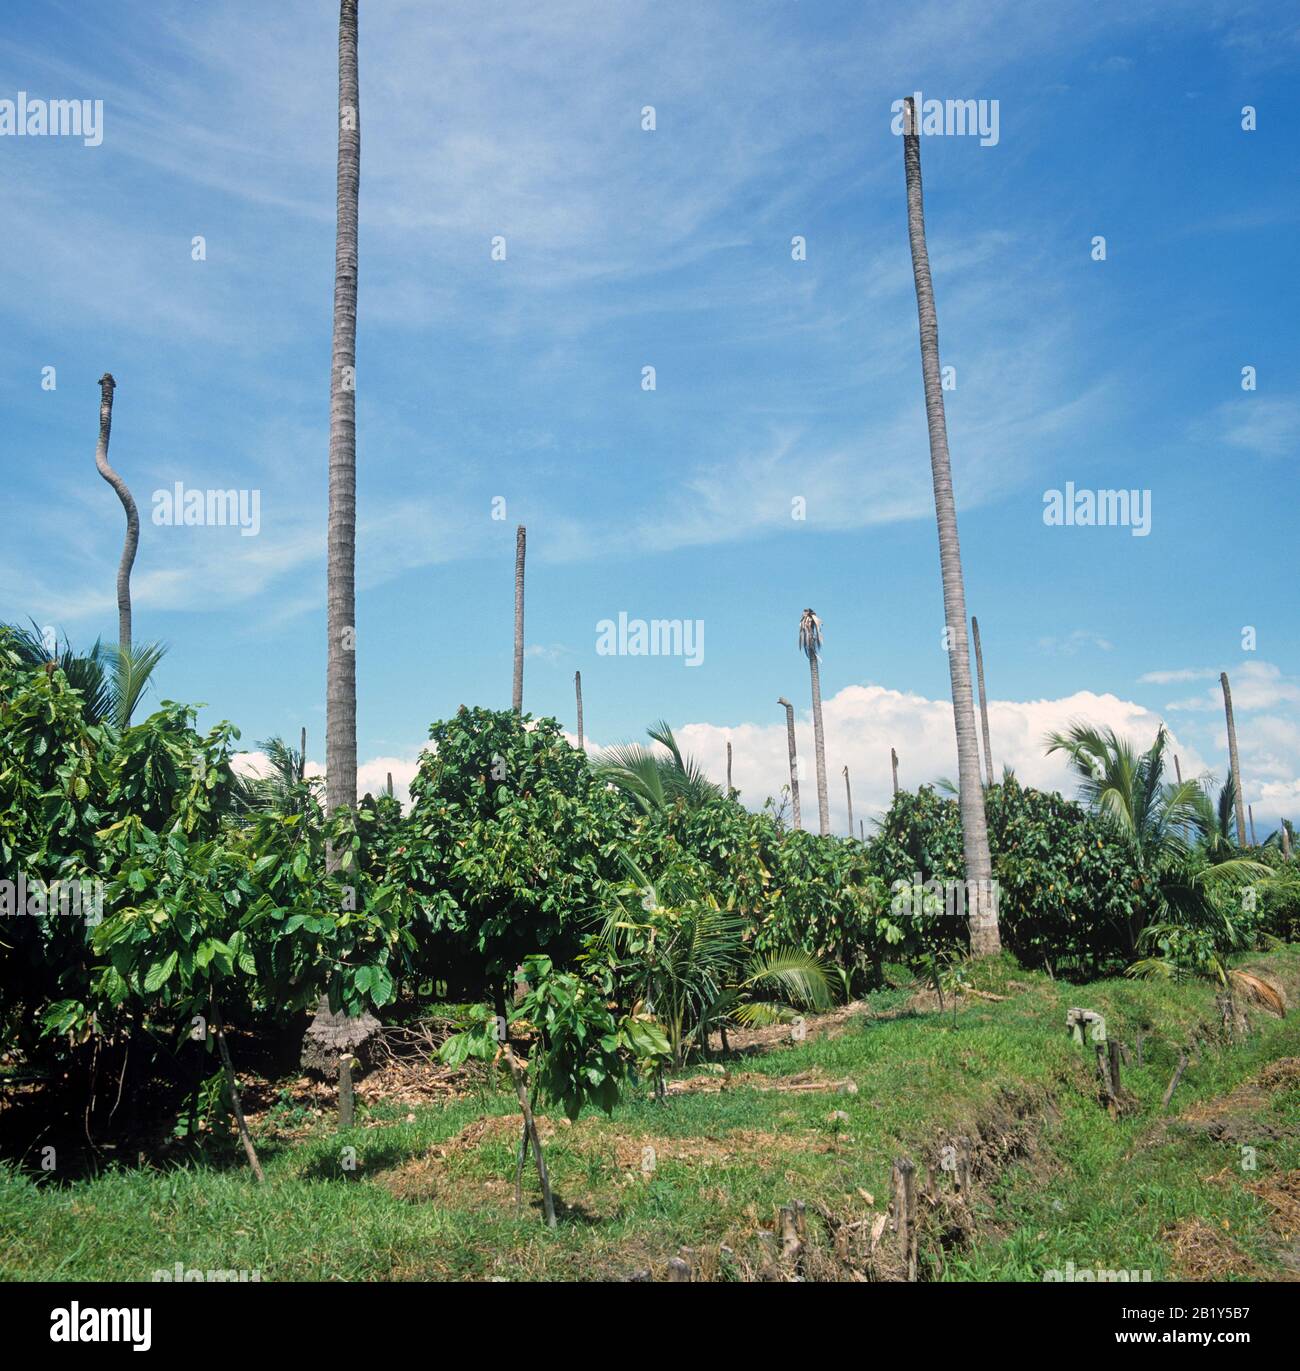 Die Plantage des reifen Kakaos (Theobroma Cacao) wurde unter Kokosnussschatthbäumen aufgezogen, die jetzt von "Kerzen", Philippinen, abgetötet wurden Stockfoto